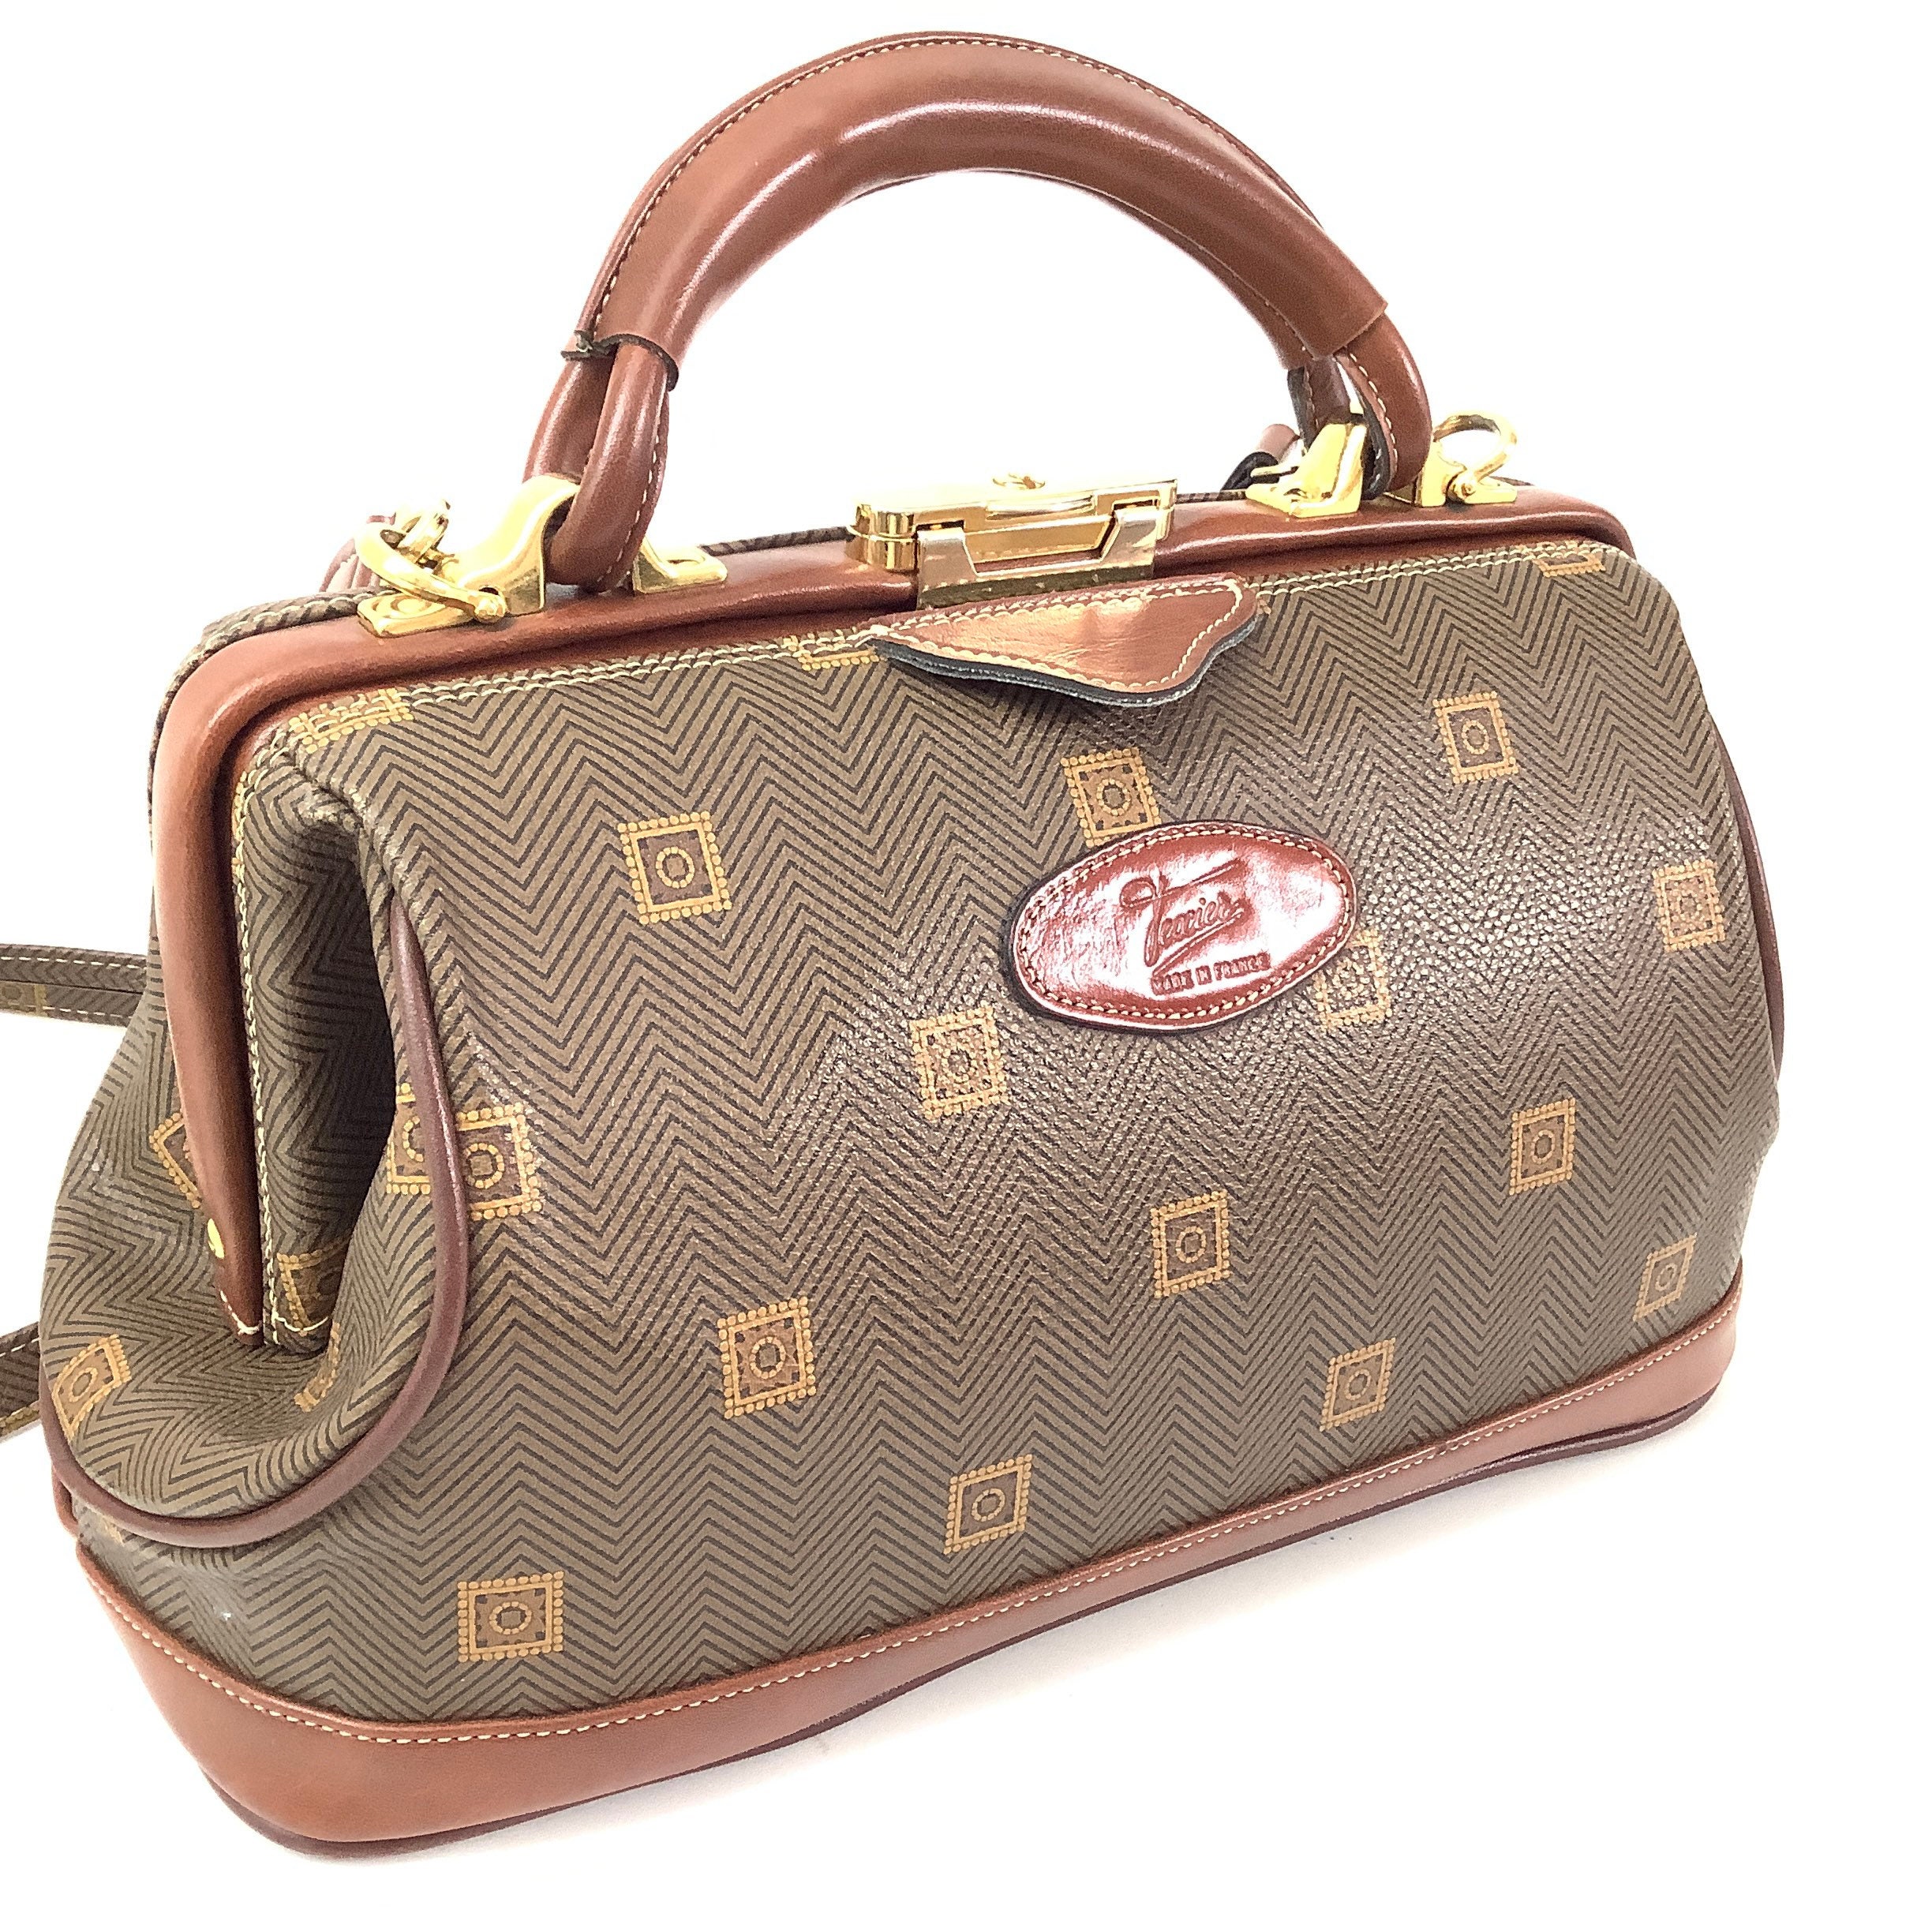 TEXIER Brown Leather Shoulder Bag Excellent - Made in France